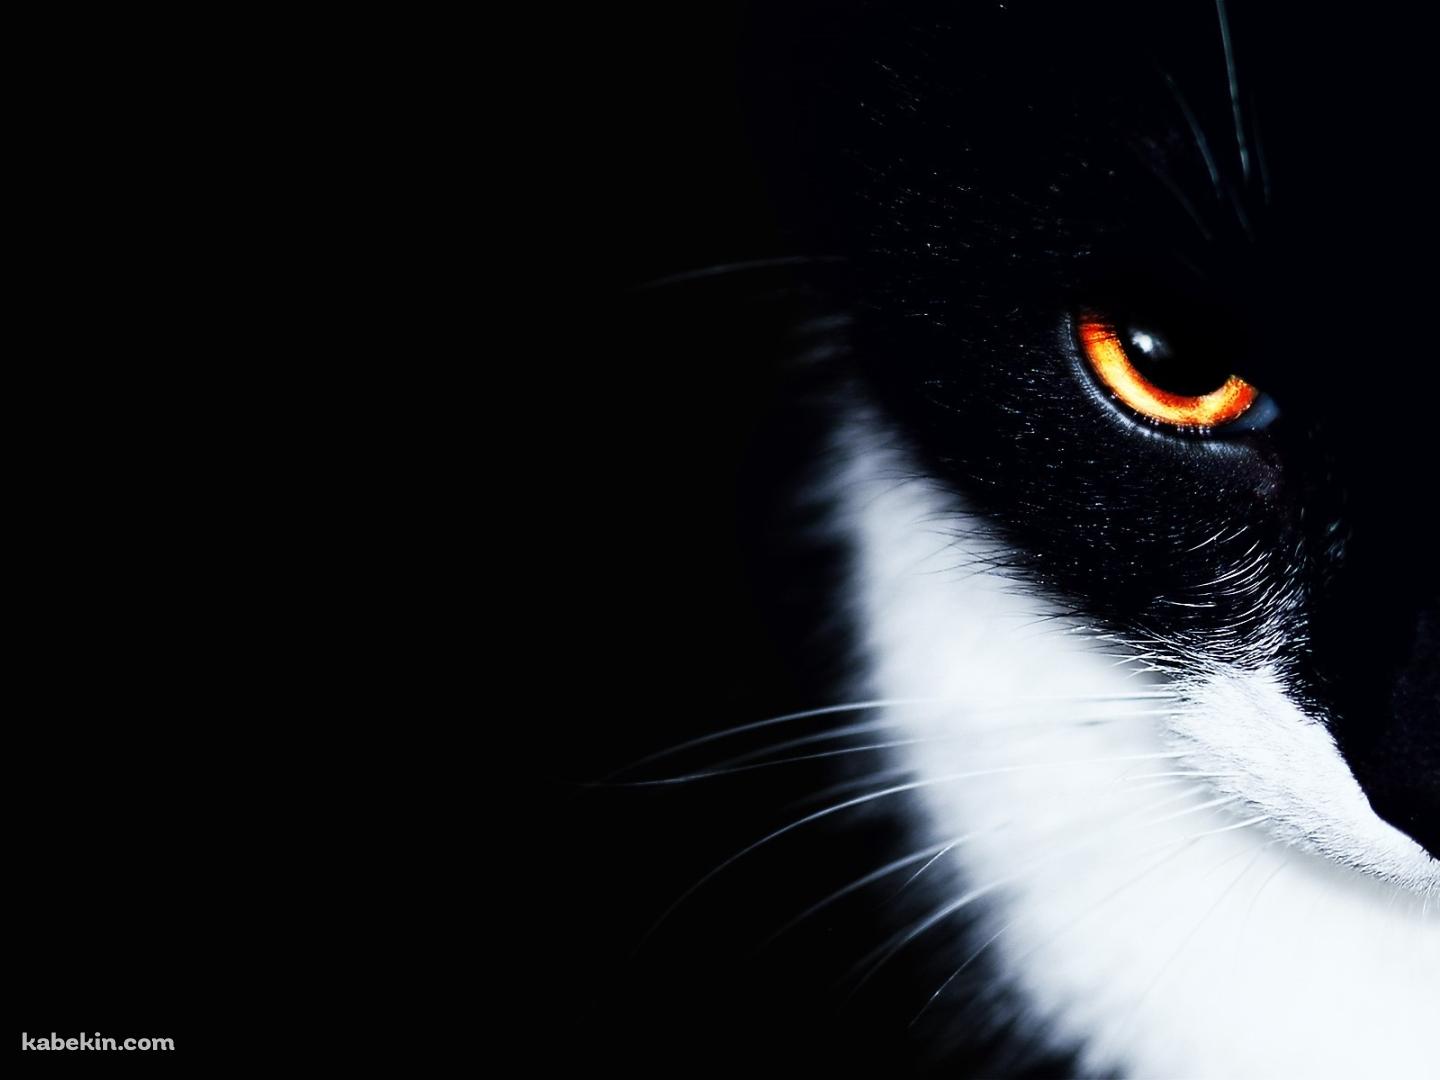 オレンジの眼をした黒猫の壁紙(1440px x 1080px) 高画質 PC・デスクトップ用